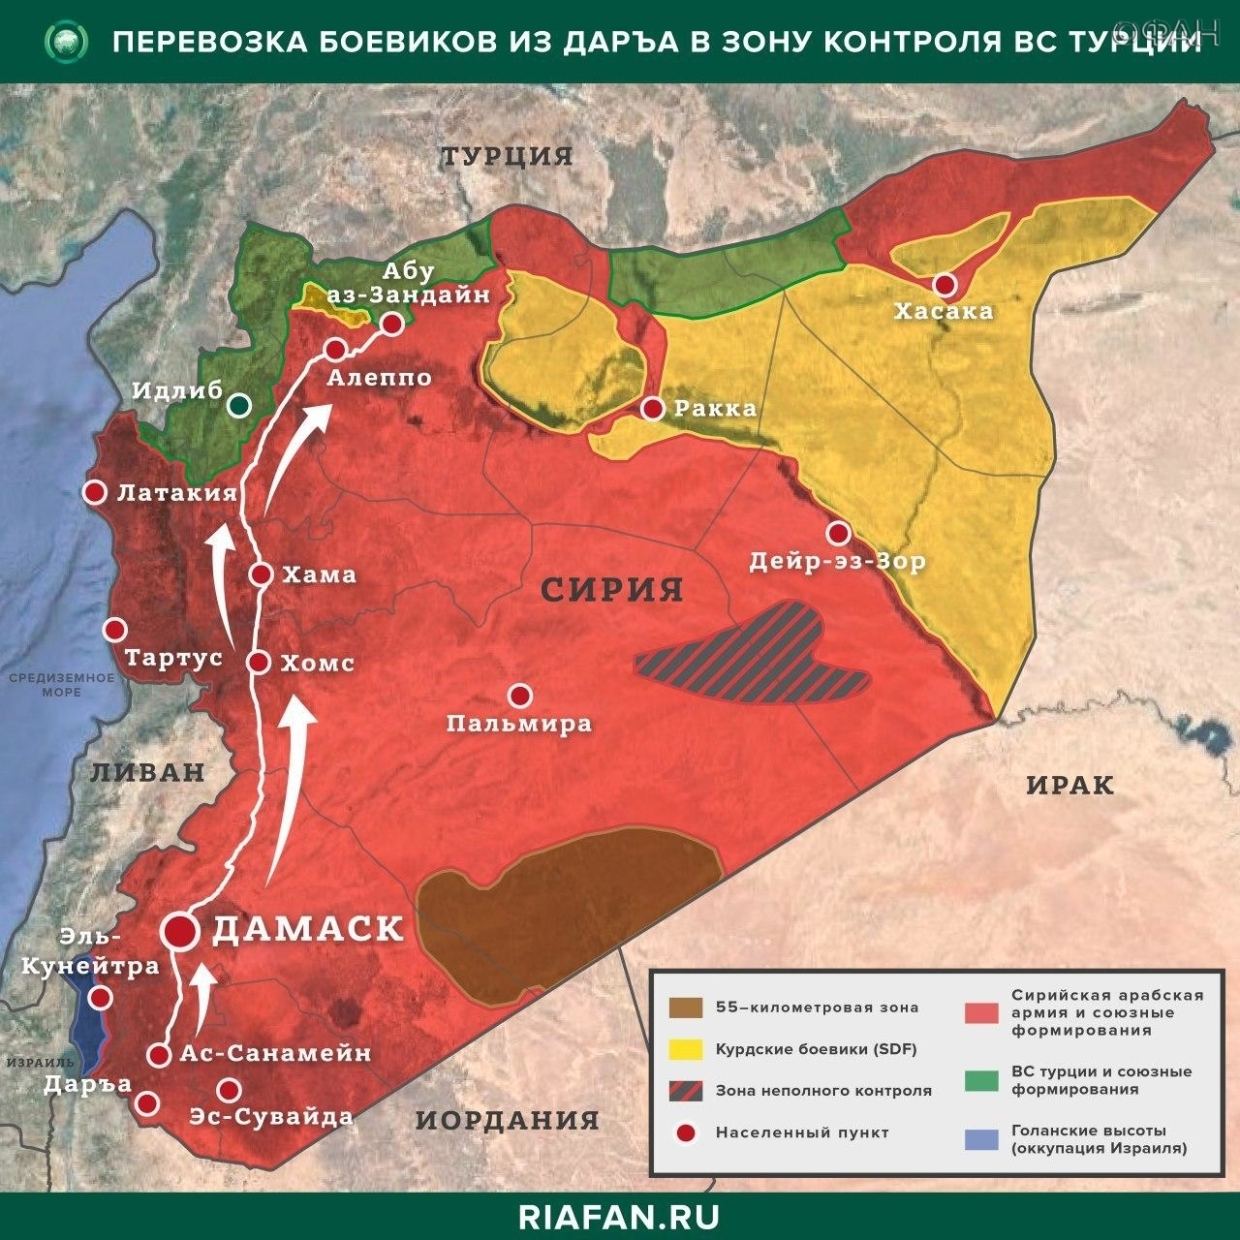 叙利亚文摘: 叙利亚事件摘要 3 三月截至 22.00